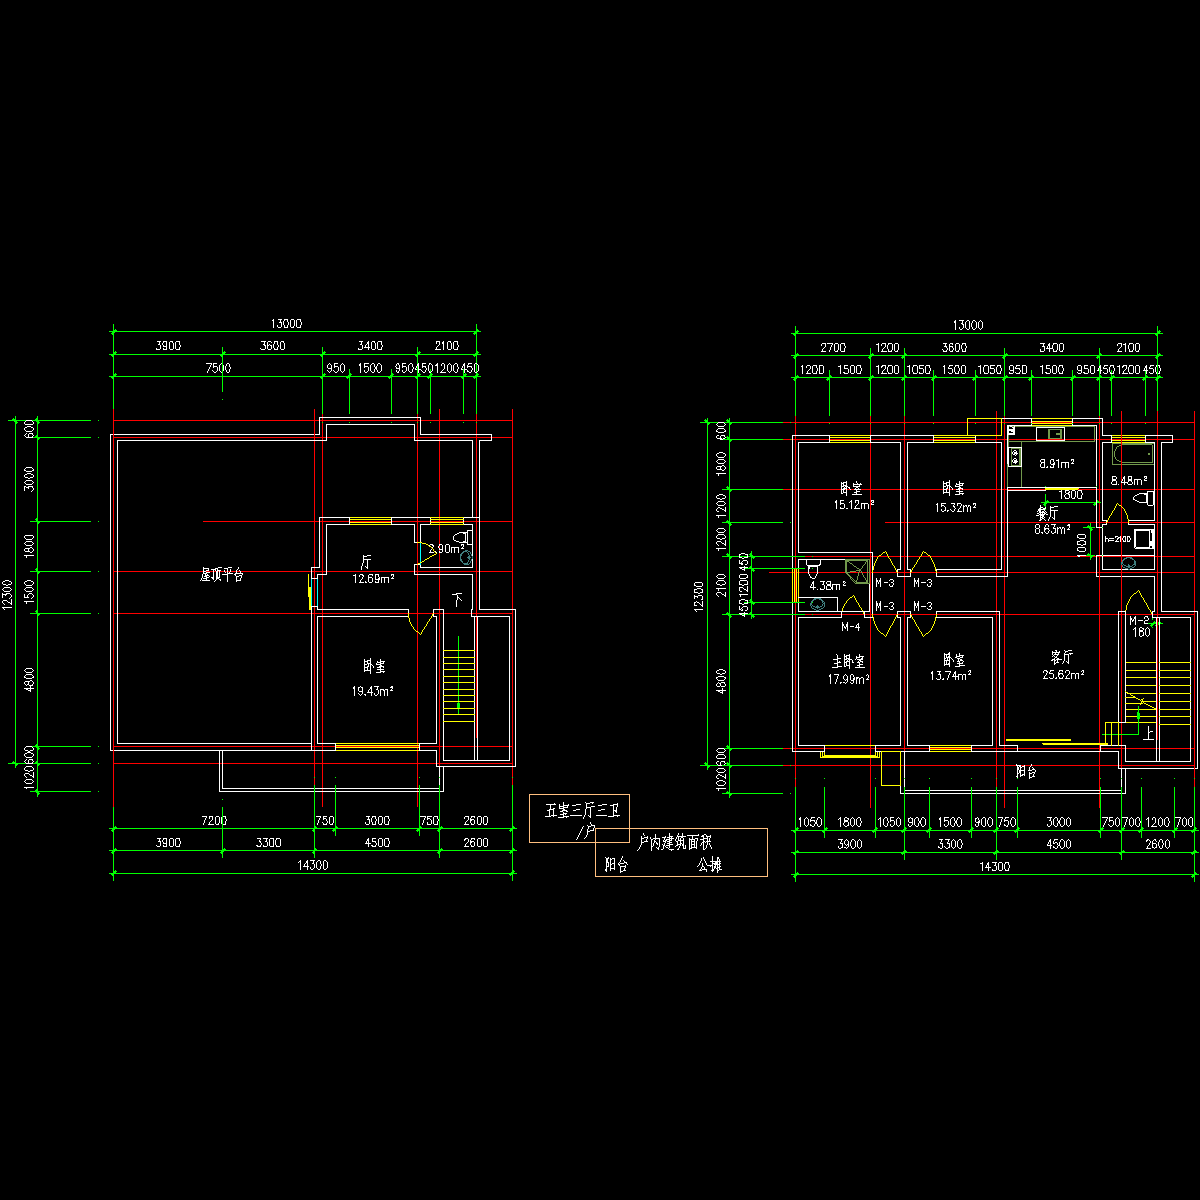 板式多层一梯二户五室三厅三卫有跃层户型CAD图纸(201/201)